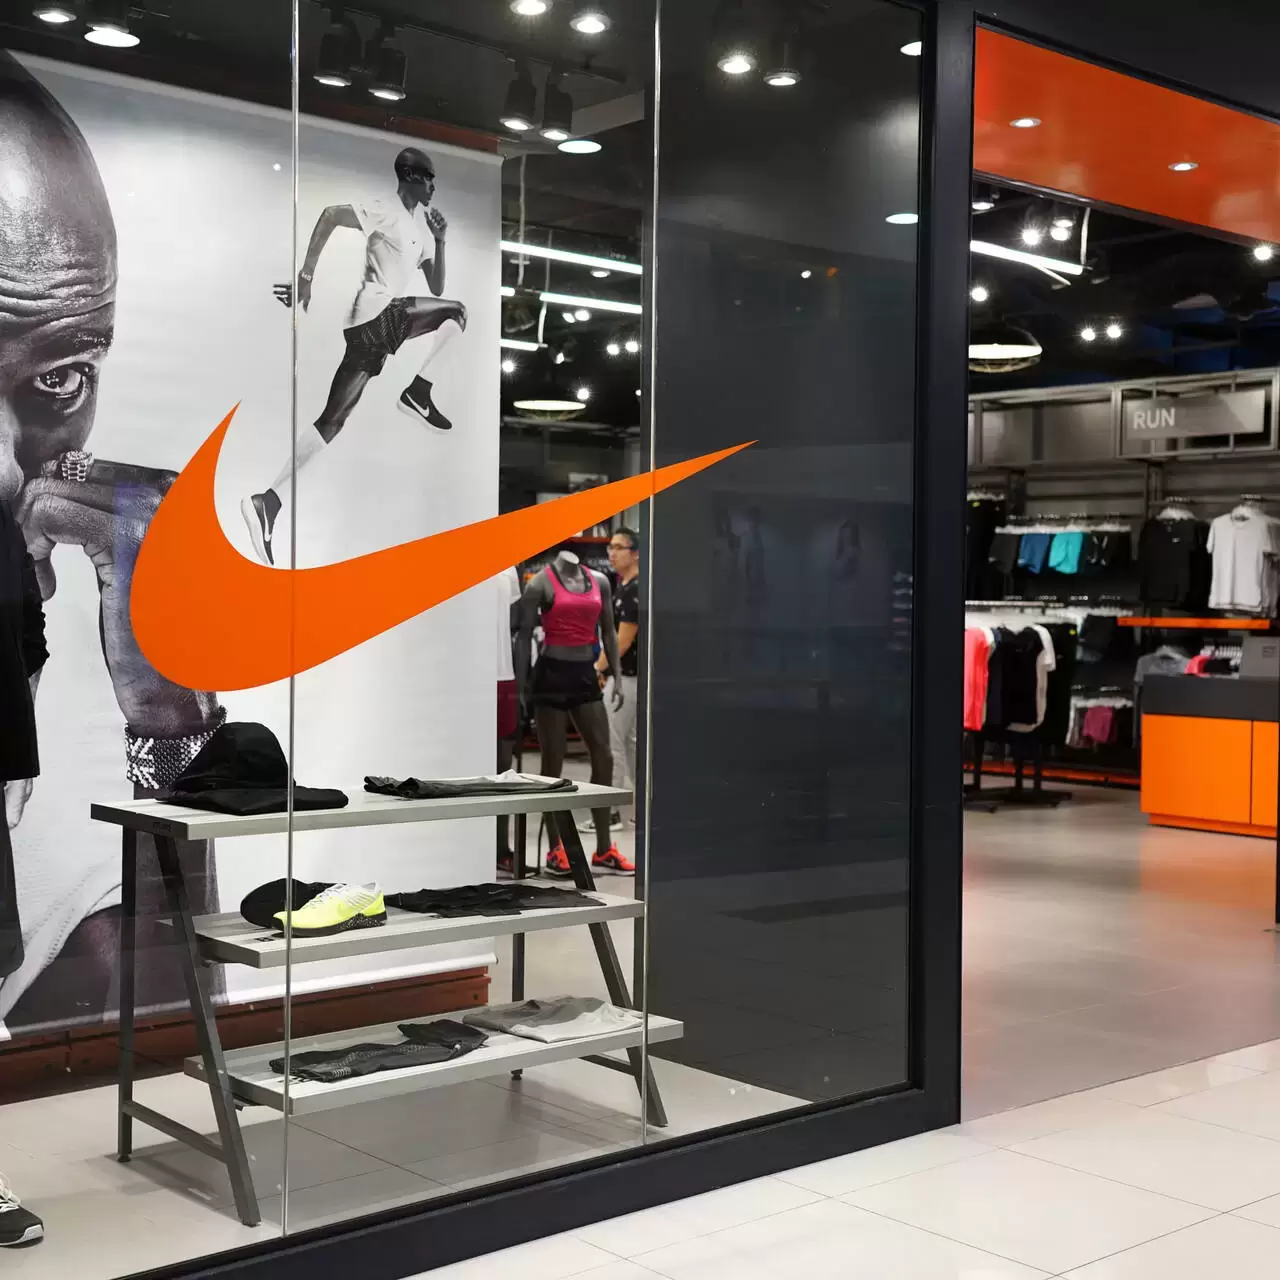 Nike Релизы Интернет Магазин